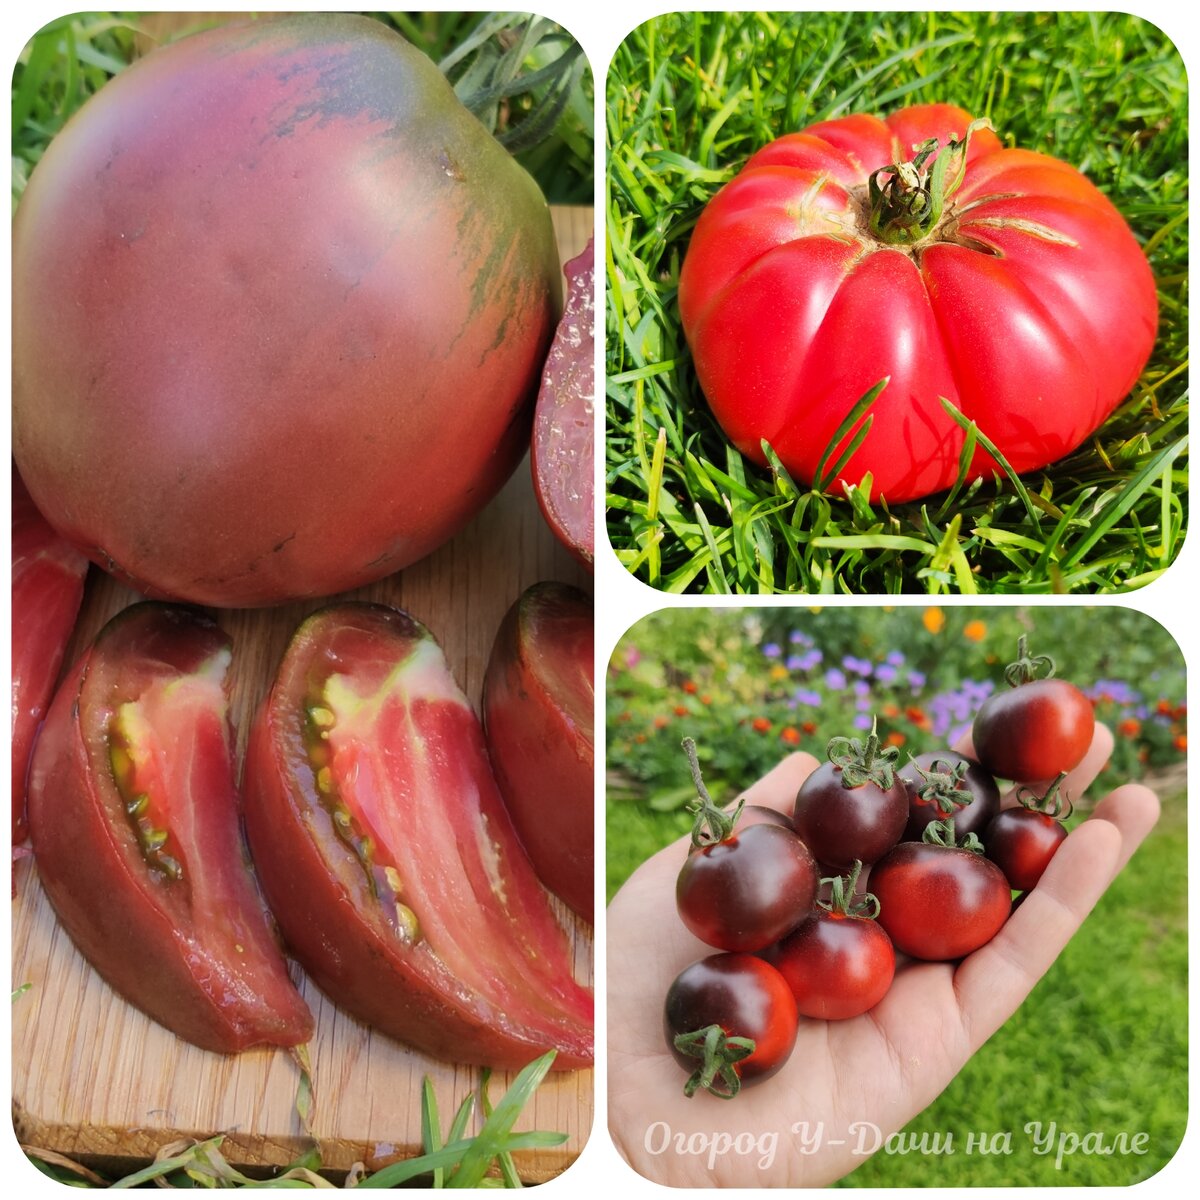 Выращивала 31 сорт и 2 гибрида томатов, какие томаты оказались достойныпервого места. Честный отзыв